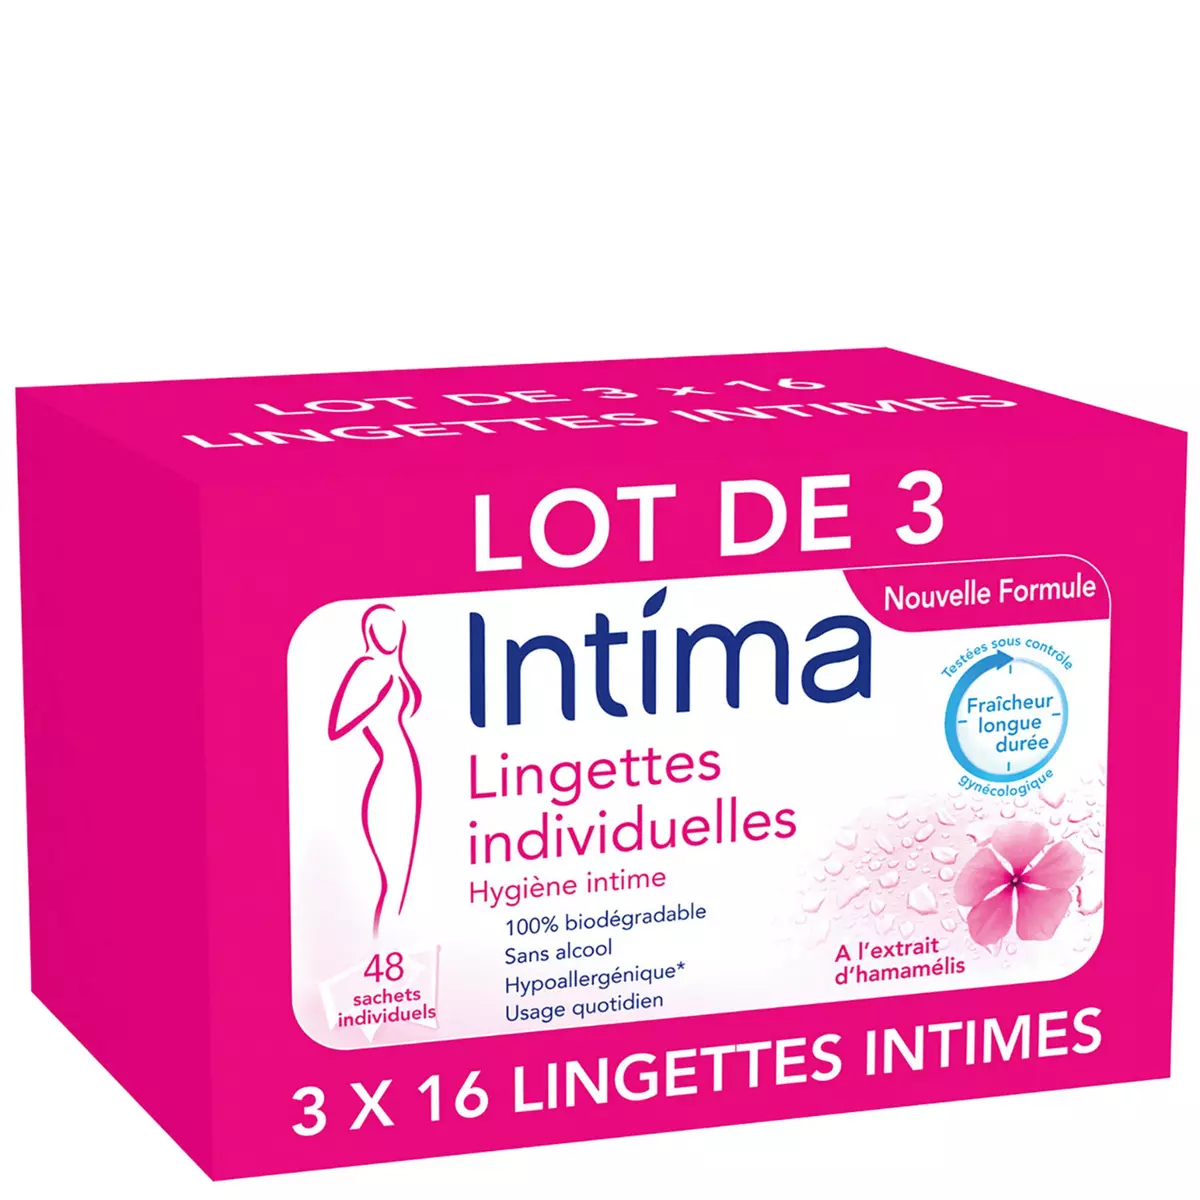 INTIMA Lingettes individuelles hygiène intime hypoallergéniques 3x16 lingettes 